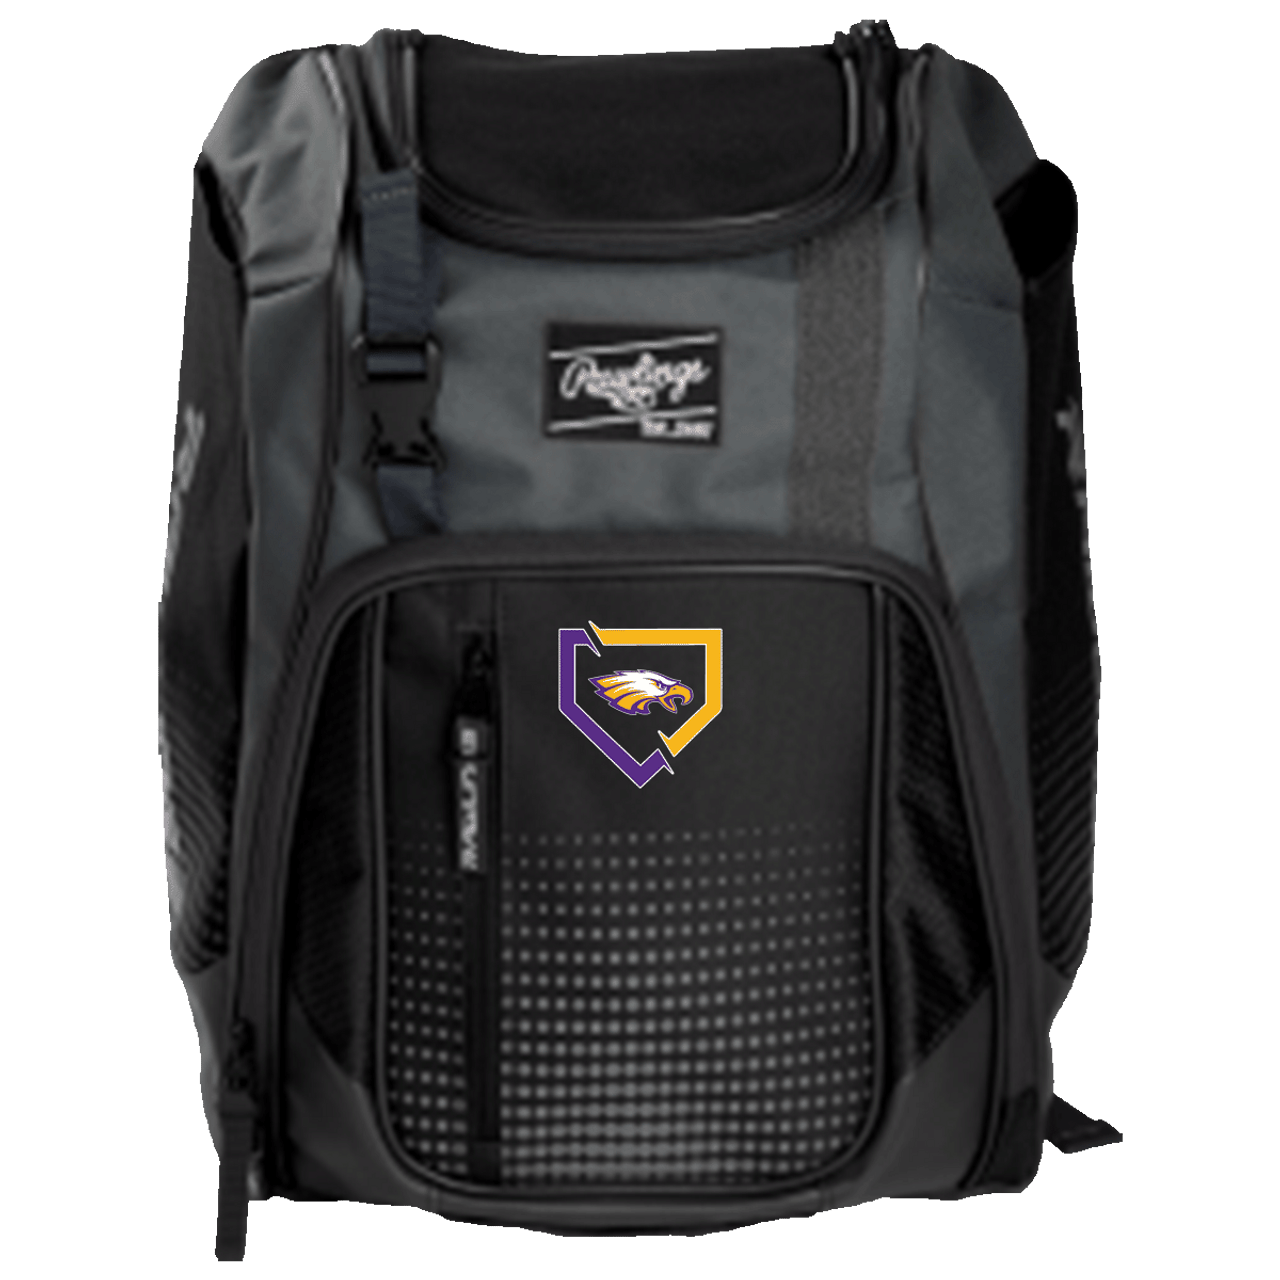 Louisville Slugger Prime Stick Backpack